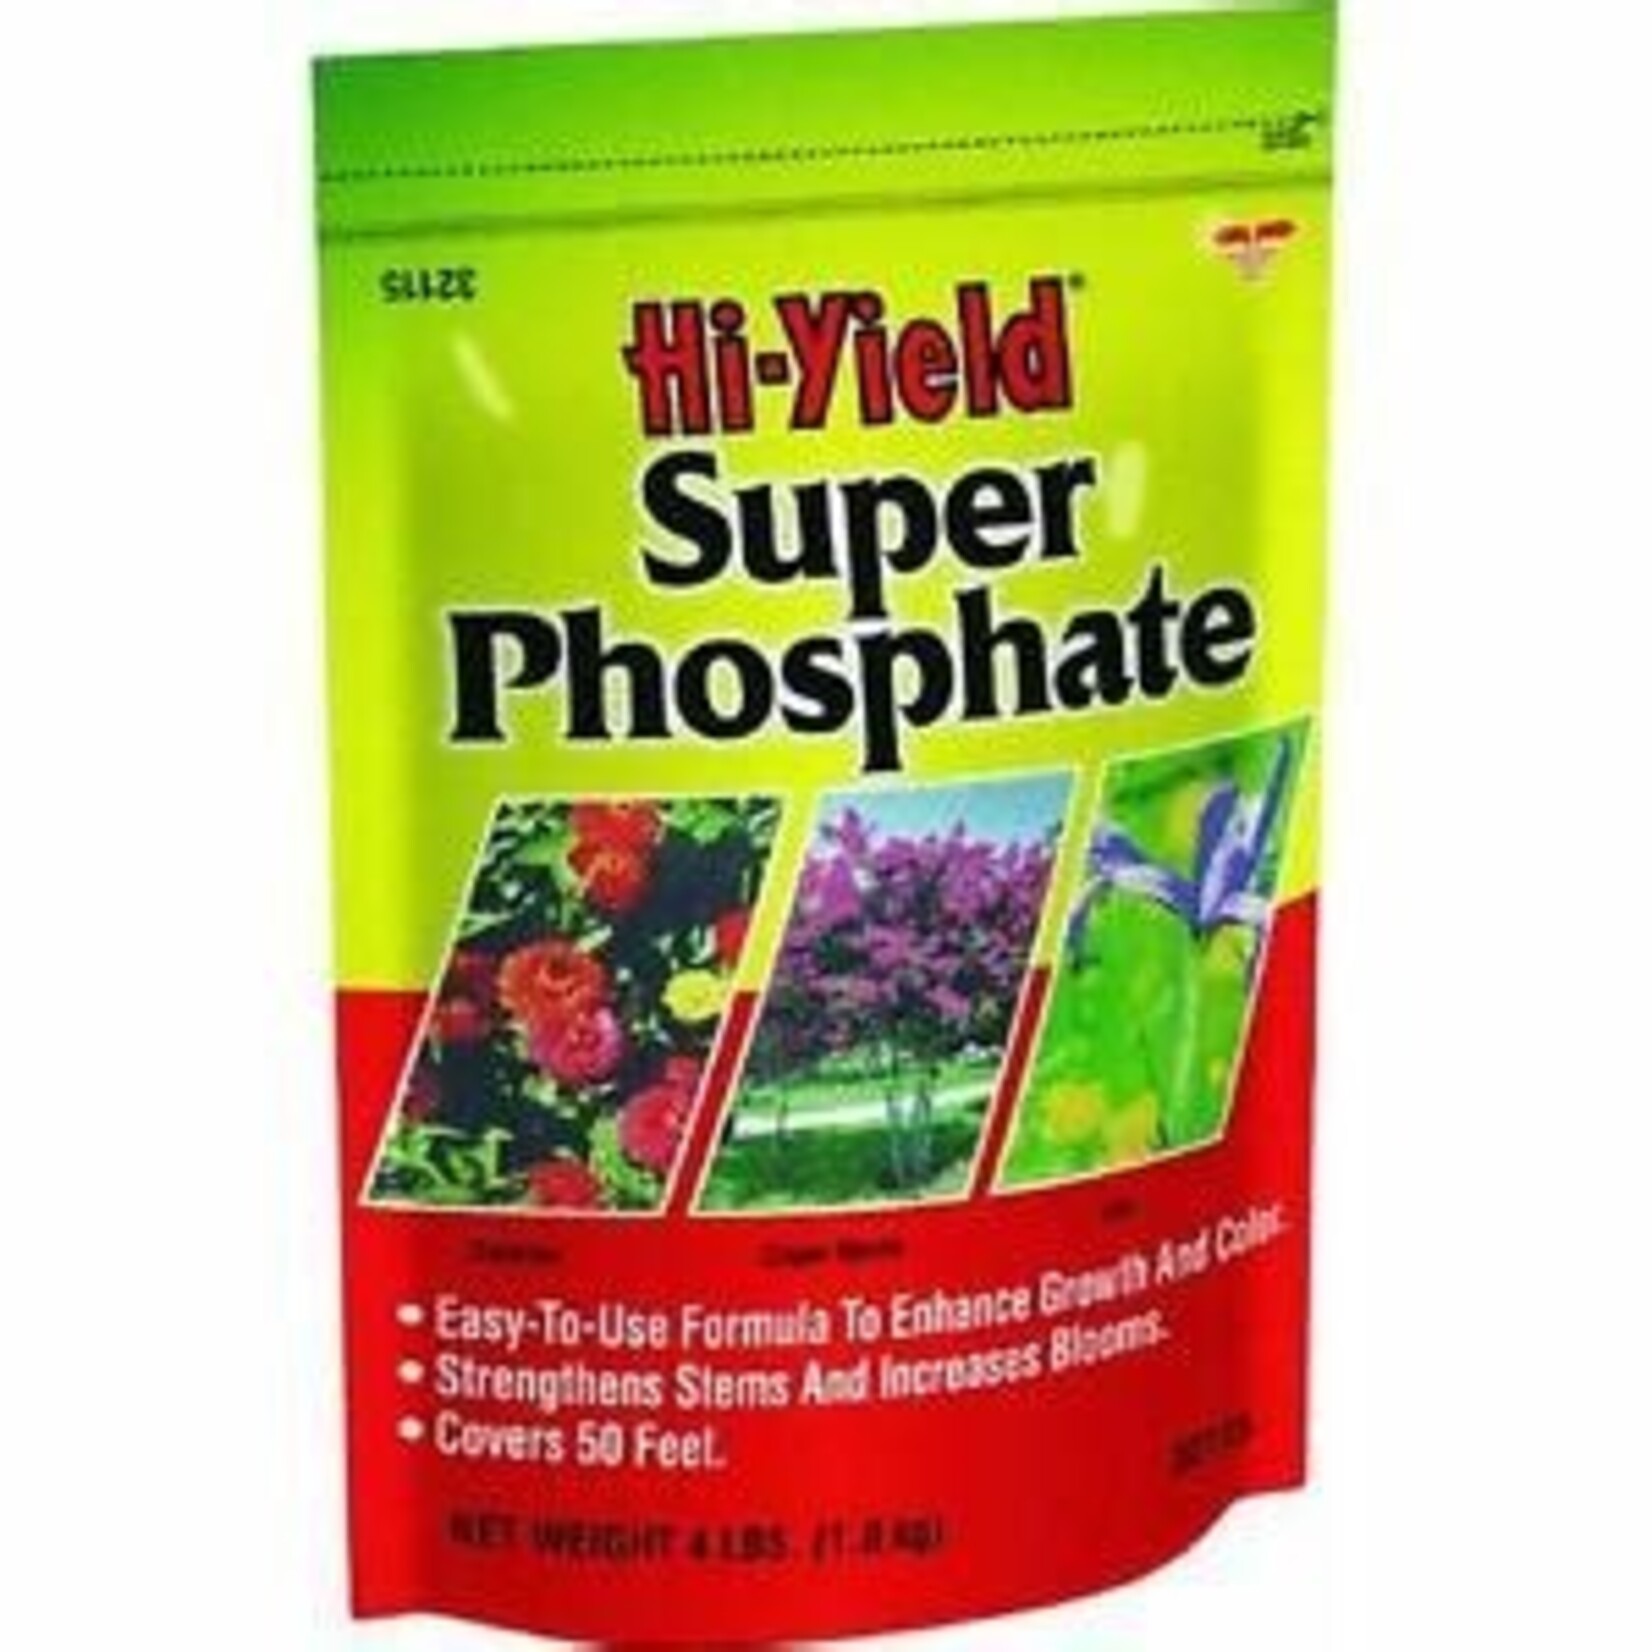 Hi-Yield Hy-Yield Super Phosphate 4 lb